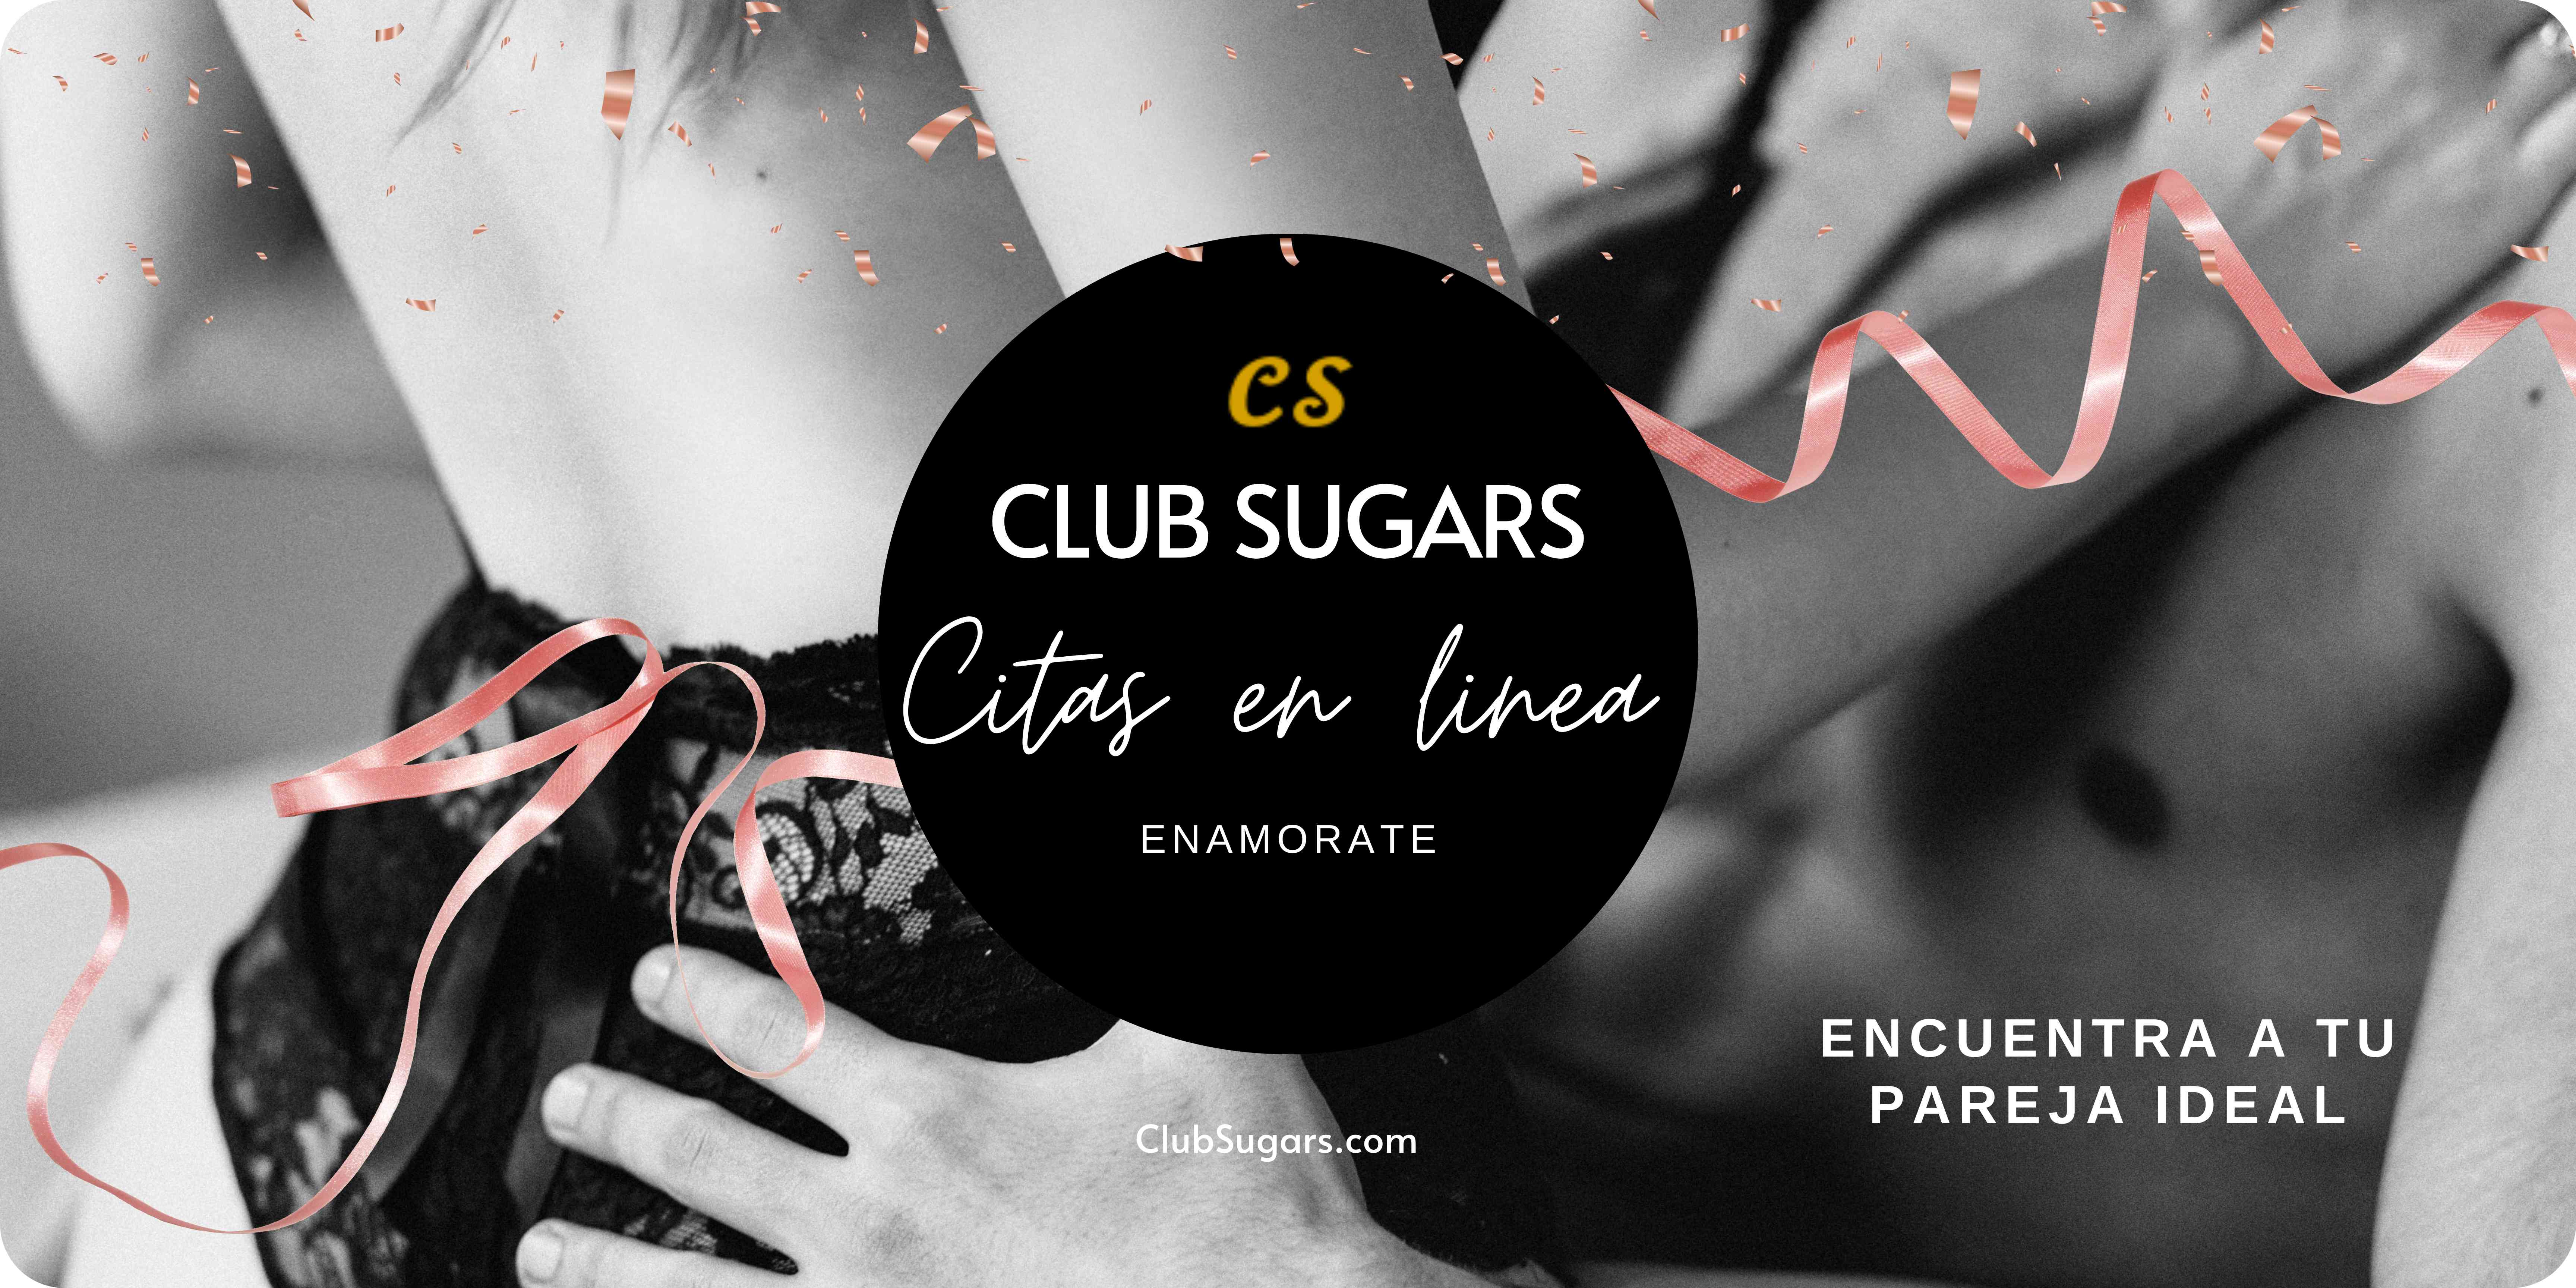 Club Sugars, Citas en linea